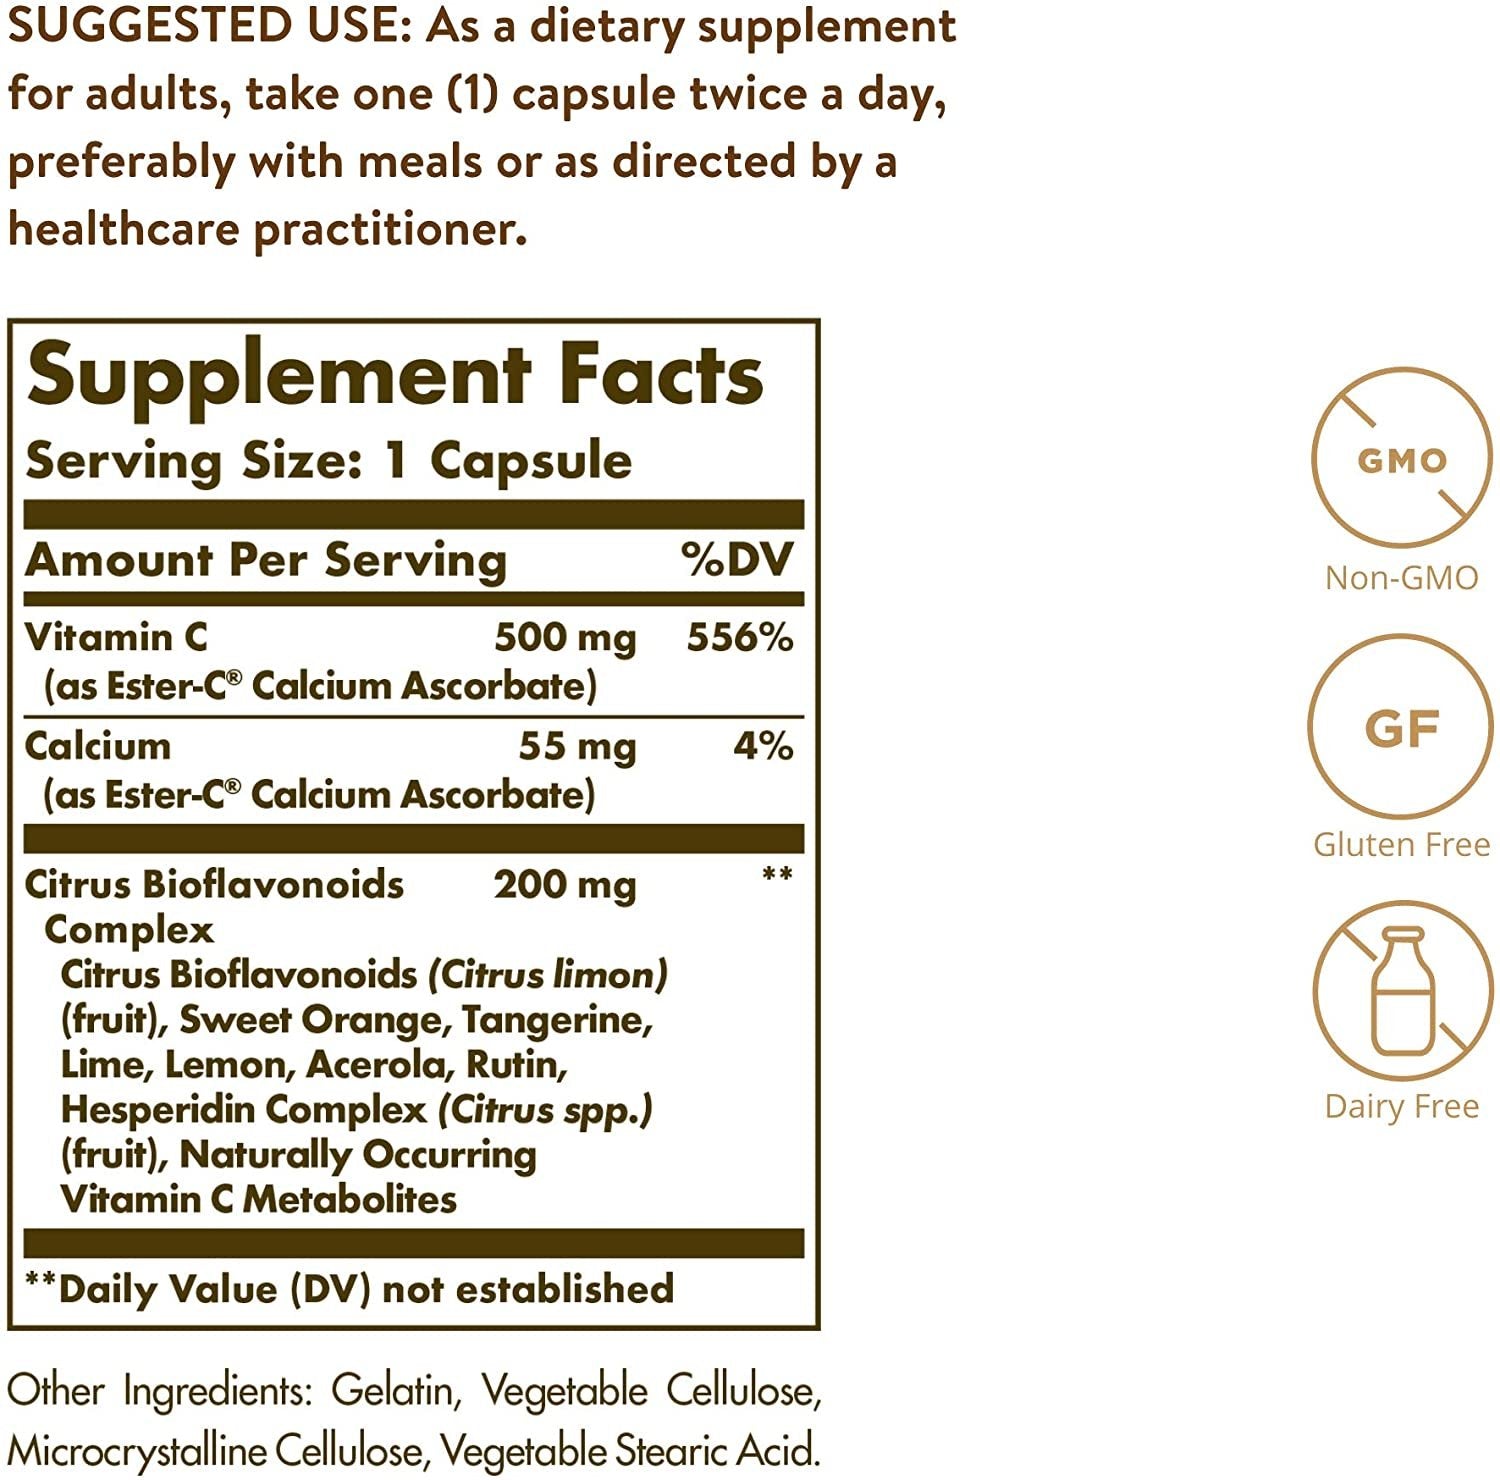 Solgar Ester-C Plus 500 mg Vitamin C with Citrus Bioflavonoids - 90 Capsules - Gentle & Non Acidic, Well Retained - 24-Hour Immune Support - Non-GMO, Gluten Free - 90 Servings